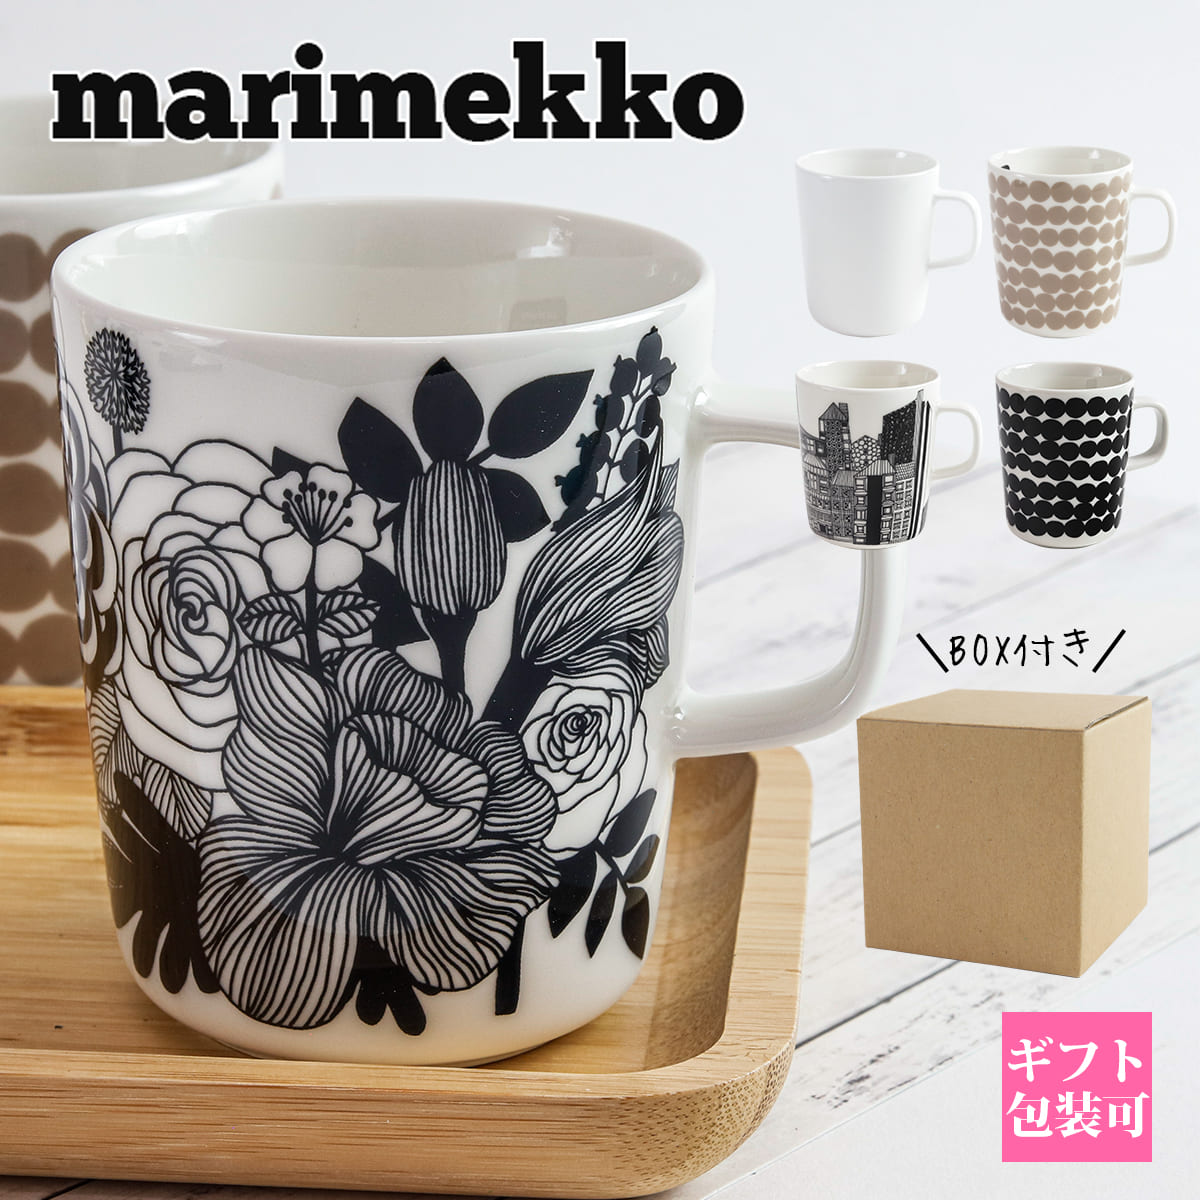 【楽天市場】マリメッコ マグカップ 結婚祝い marimekko 花柄 コップ 北欧 デザイン雑貨 食器 ブランド UNIKKO MUG